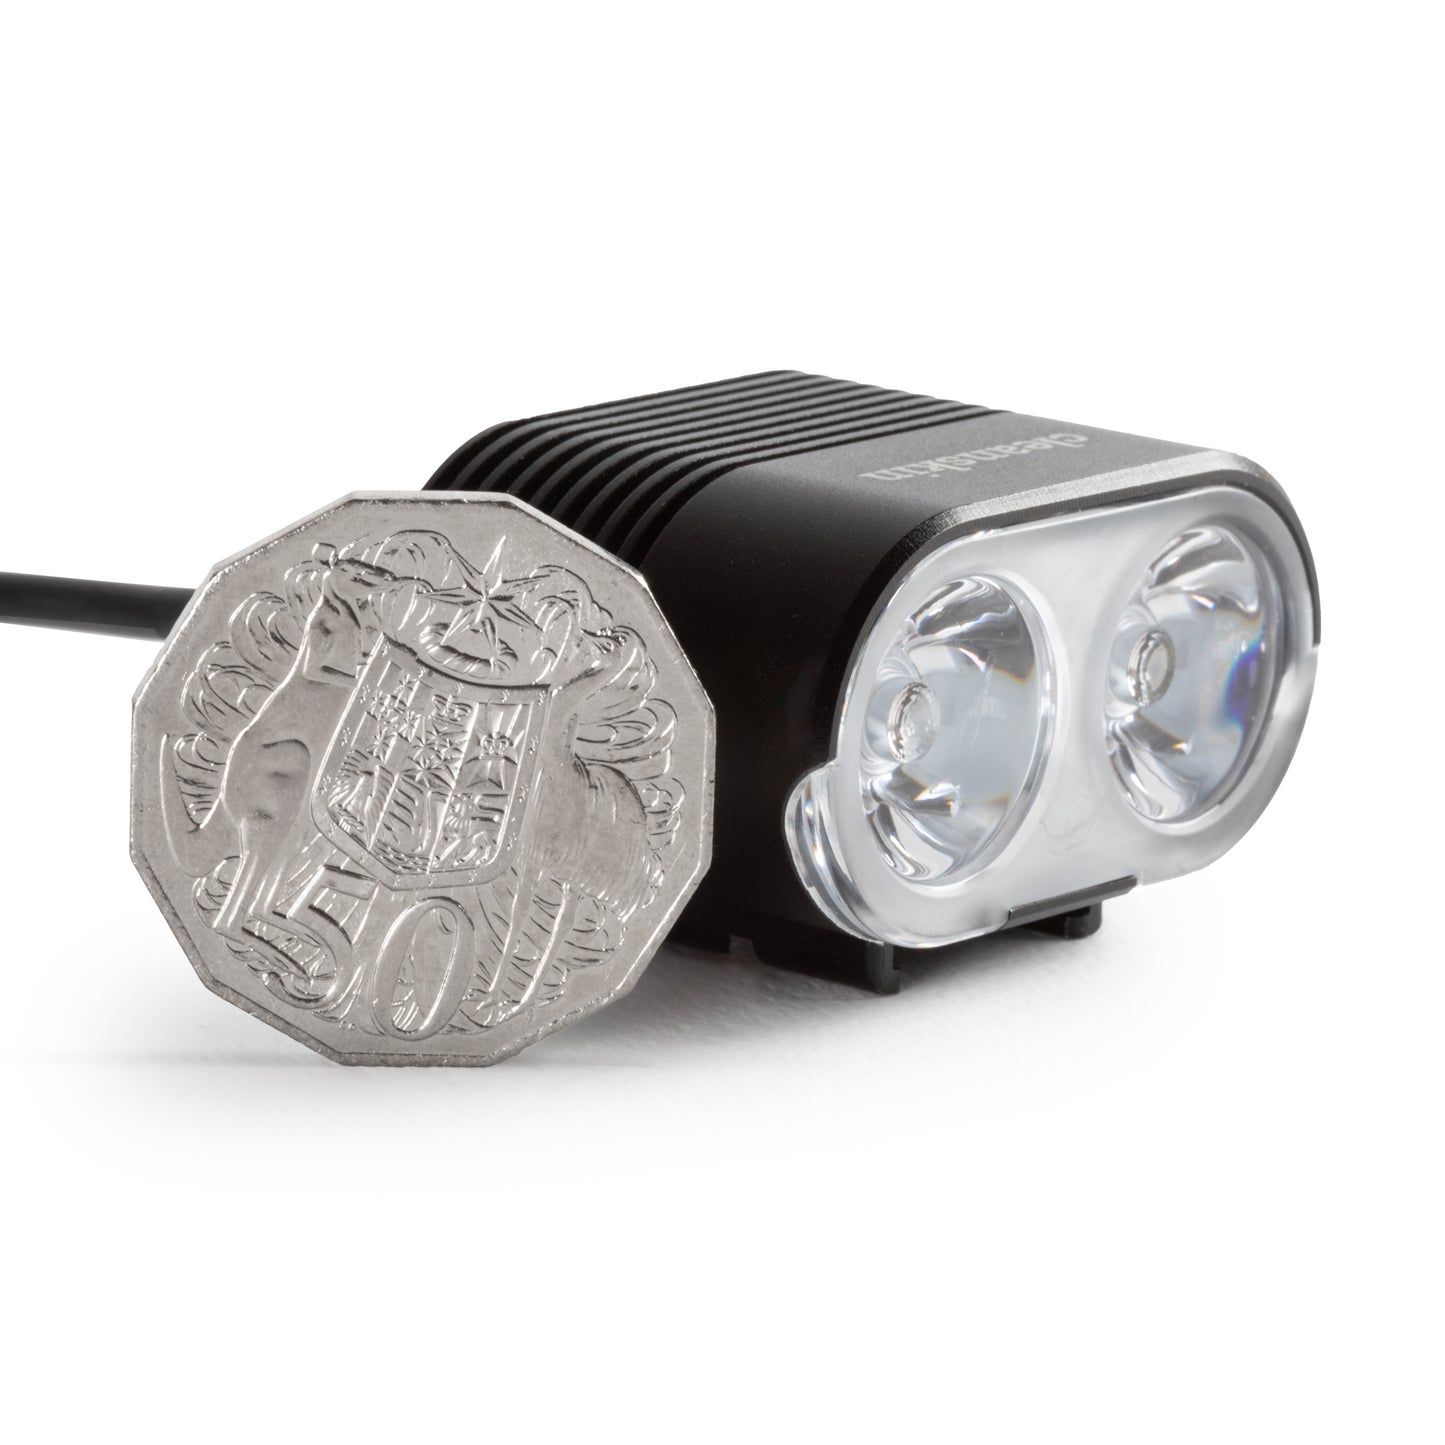 Cleanskin Duo V2 2200 Lumen Front LED Light - With GoPro Mount - Neoprene Case